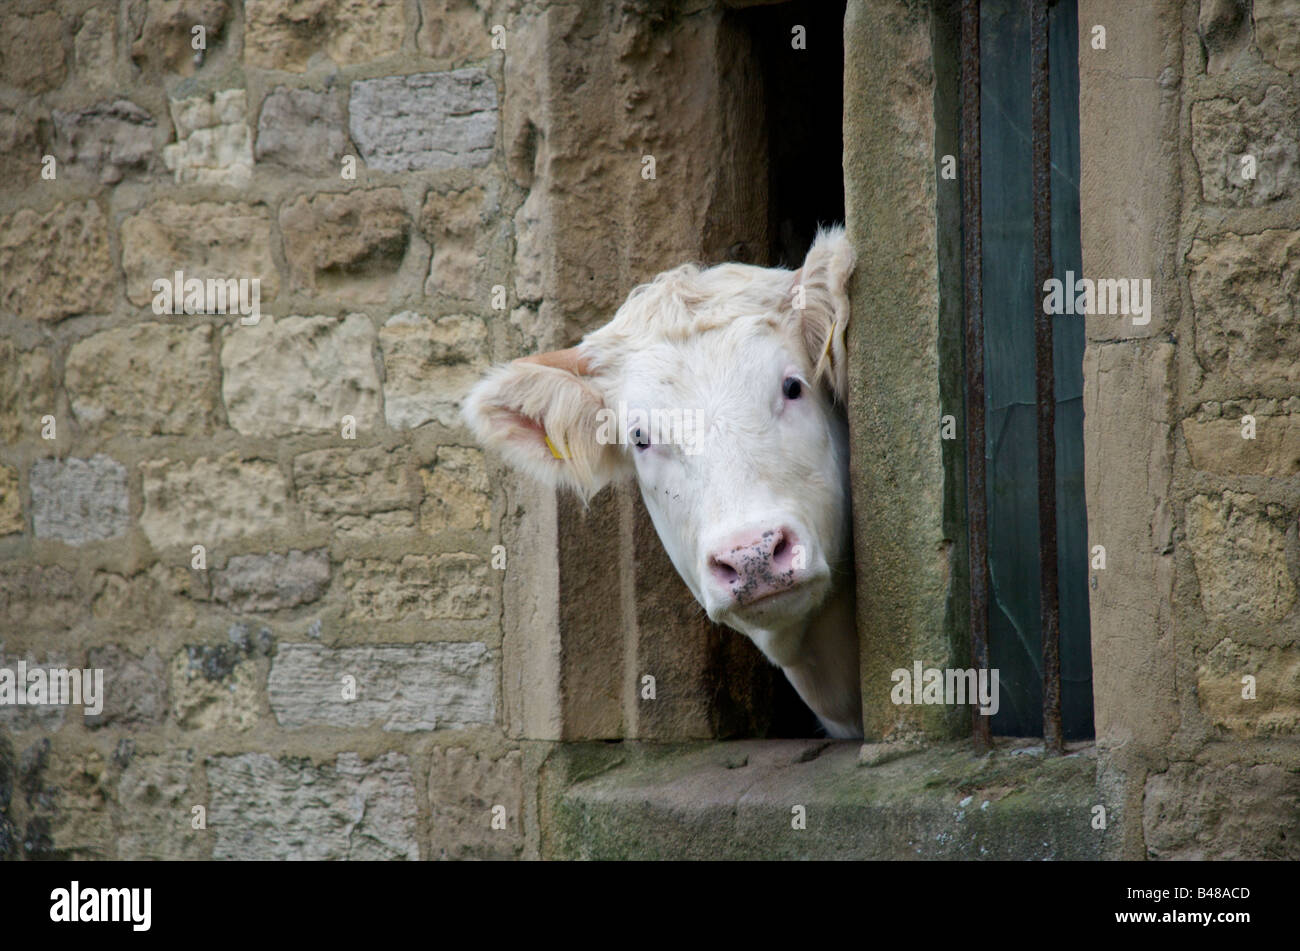 White cow saying hello Stock Photo